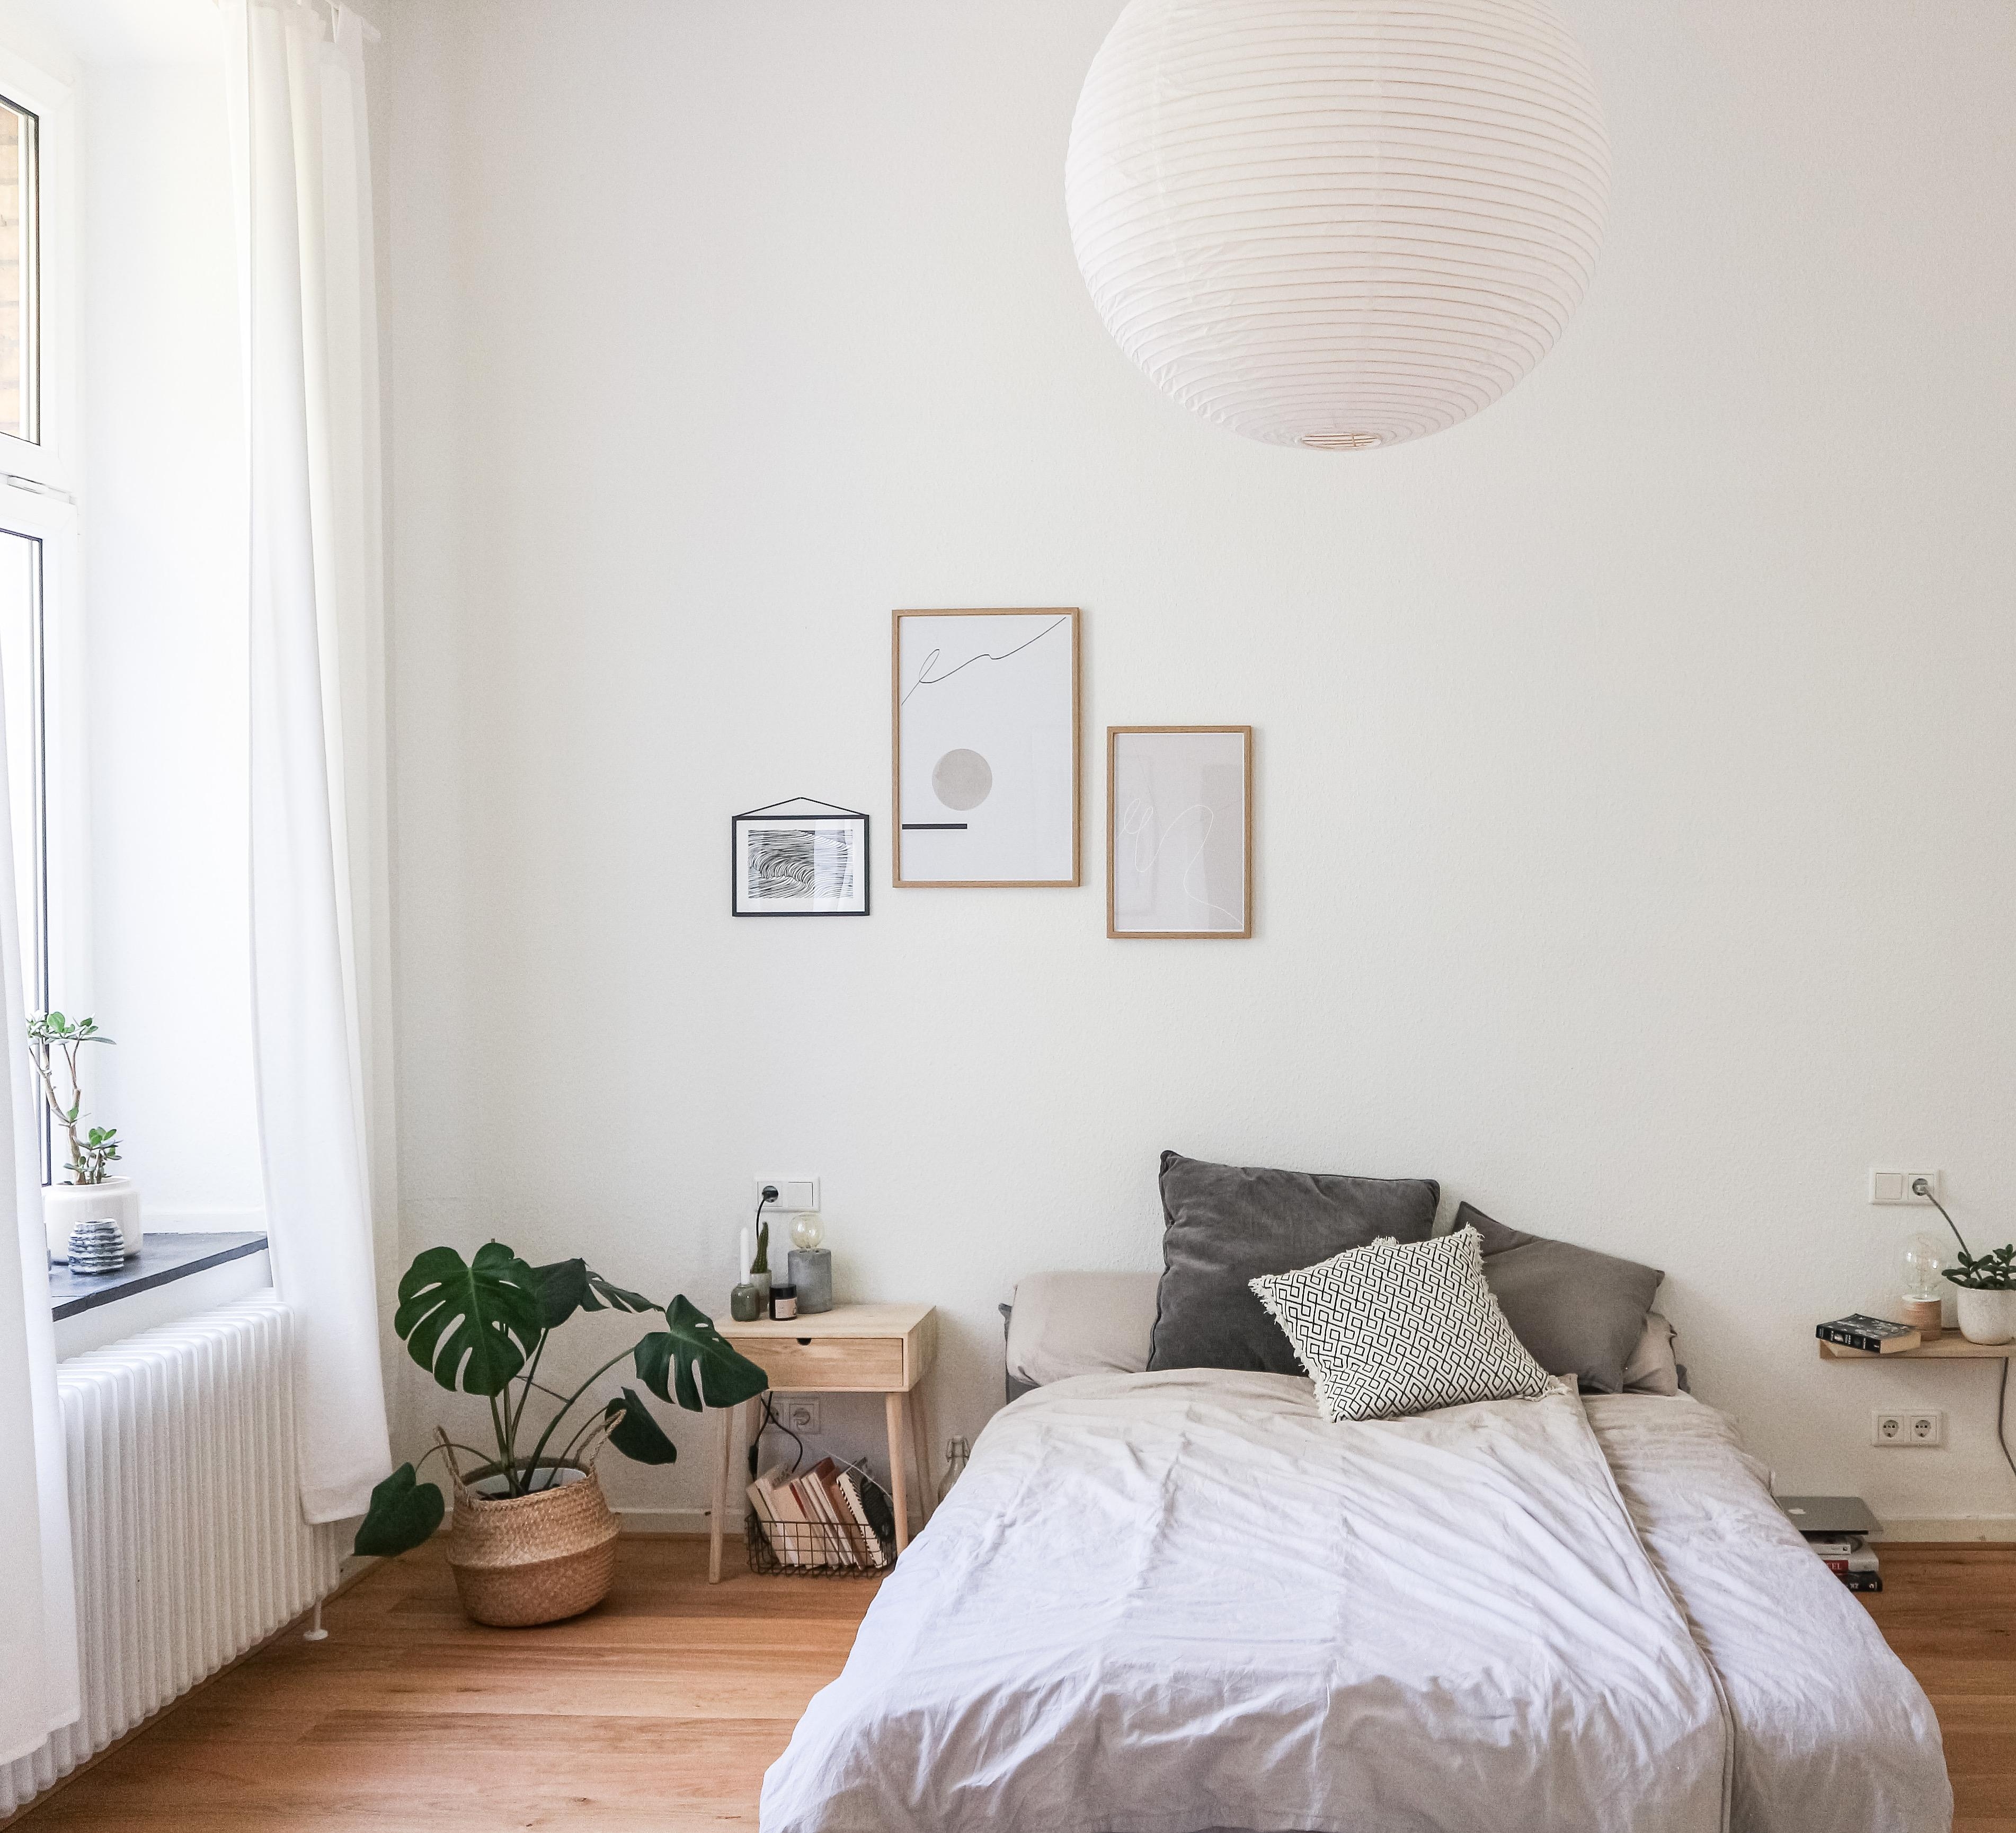 In die Rice Paper Lamp von HAY hab ich mich direkt verliebt 😍 
#bedroom #interior #haydesign #schlafzimmerinspo #plants